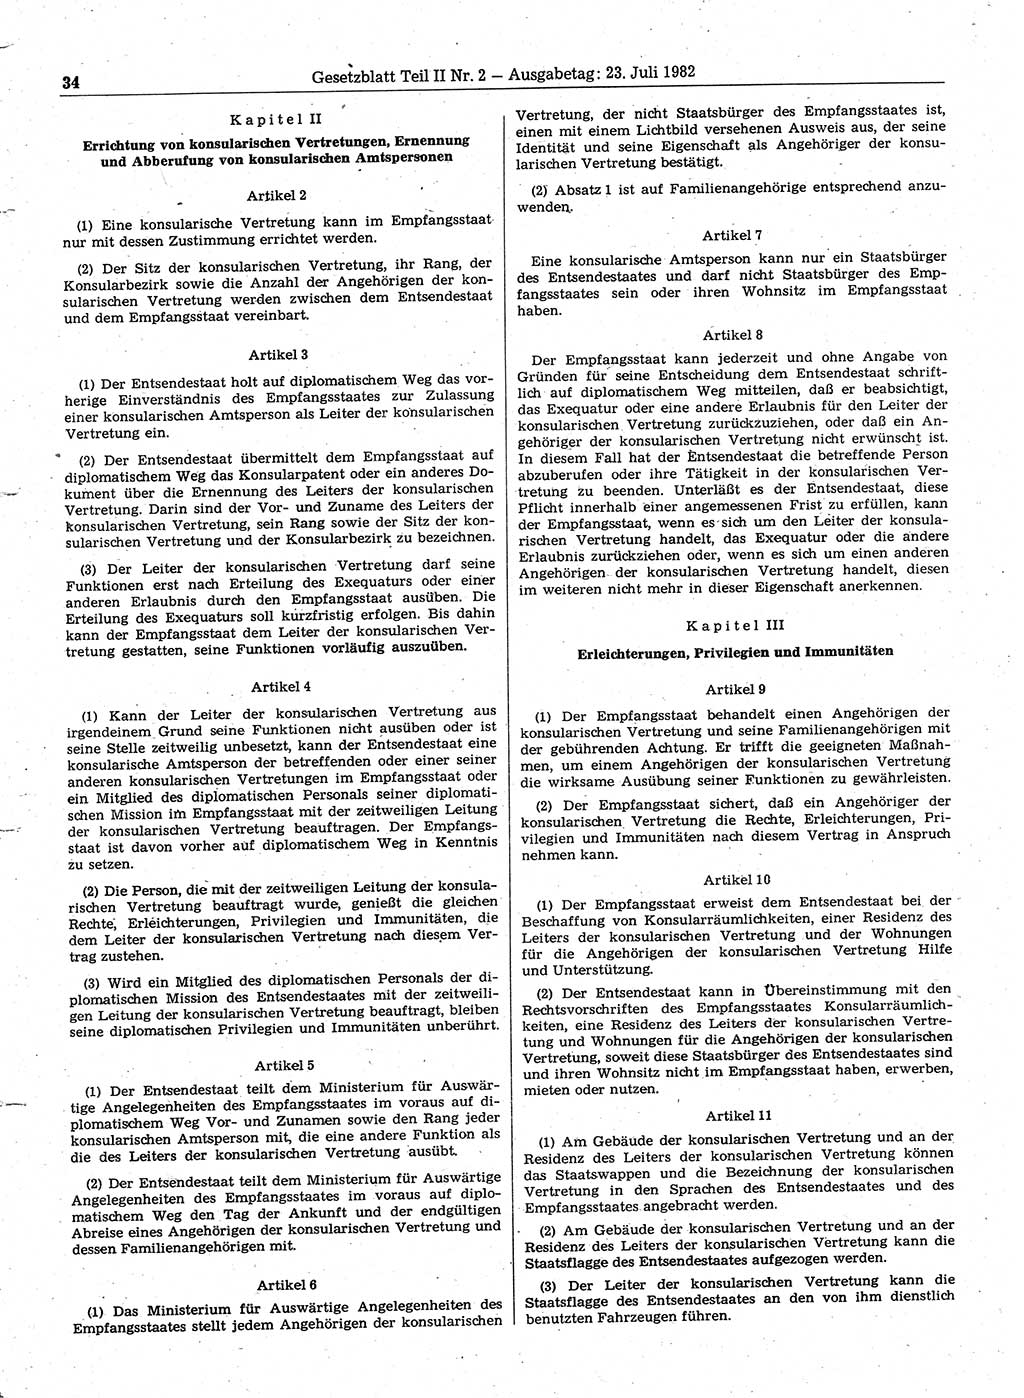 Gesetzblatt (GBl.) der Deutschen Demokratischen Republik (DDR) Teil ⅠⅠ 1982, Seite 34 (GBl. DDR ⅠⅠ 1982, S. 34)